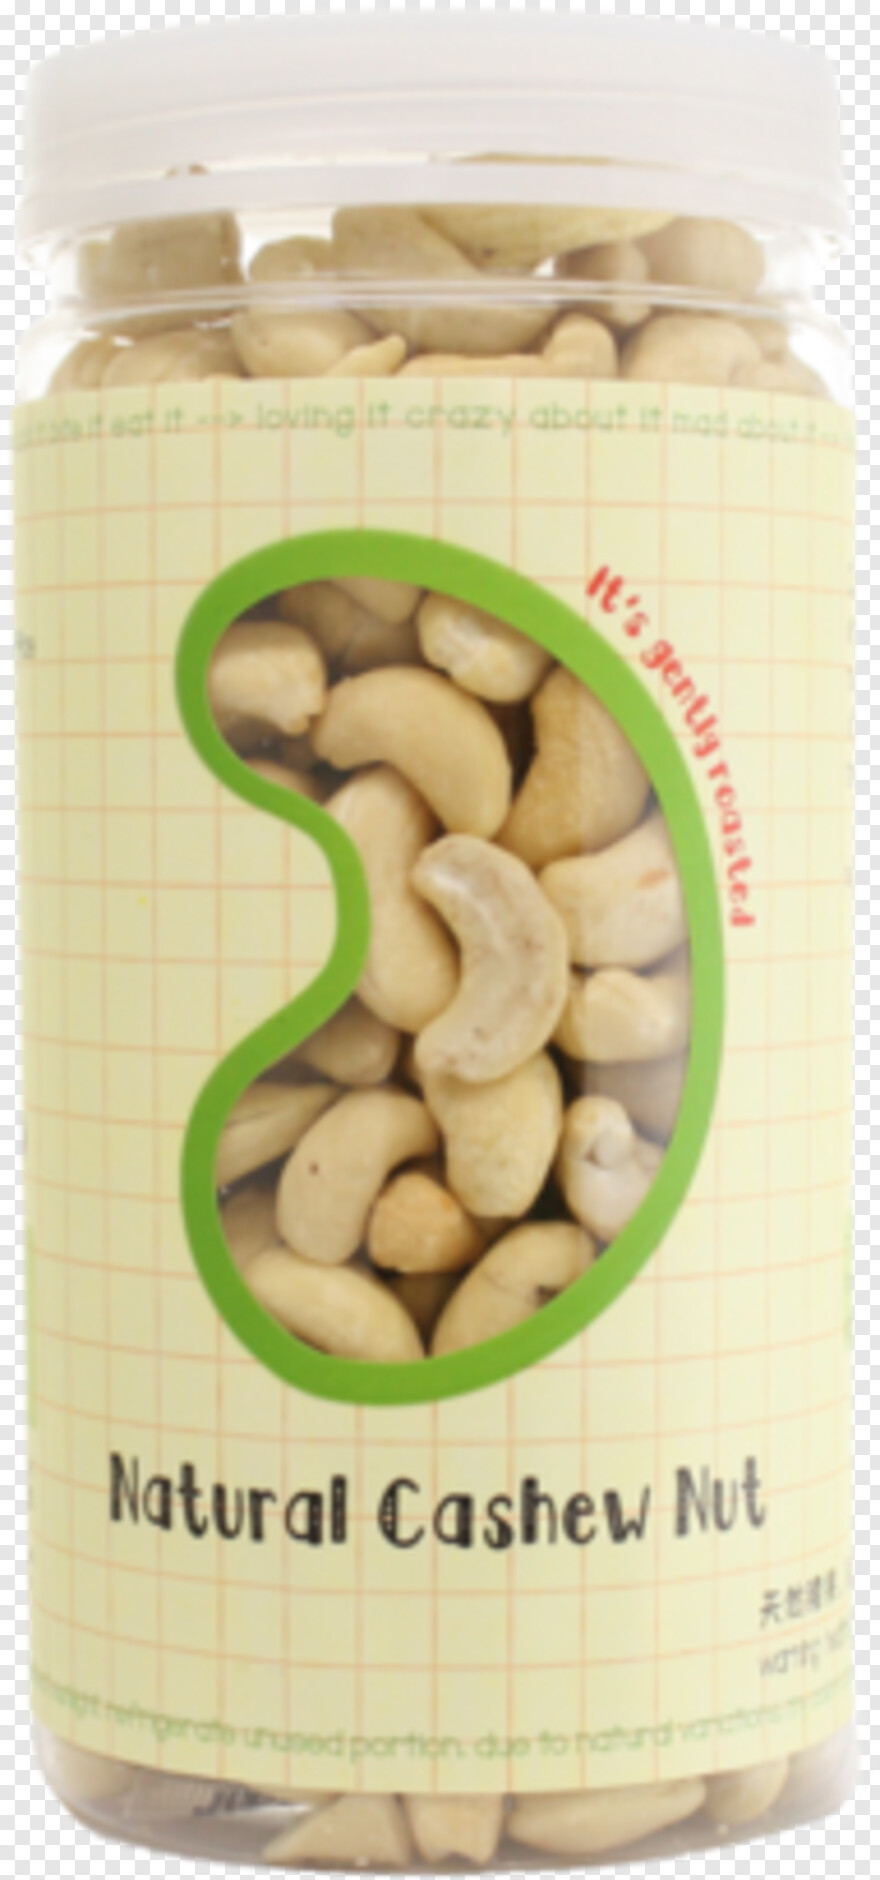 cashew-nut # 1052436